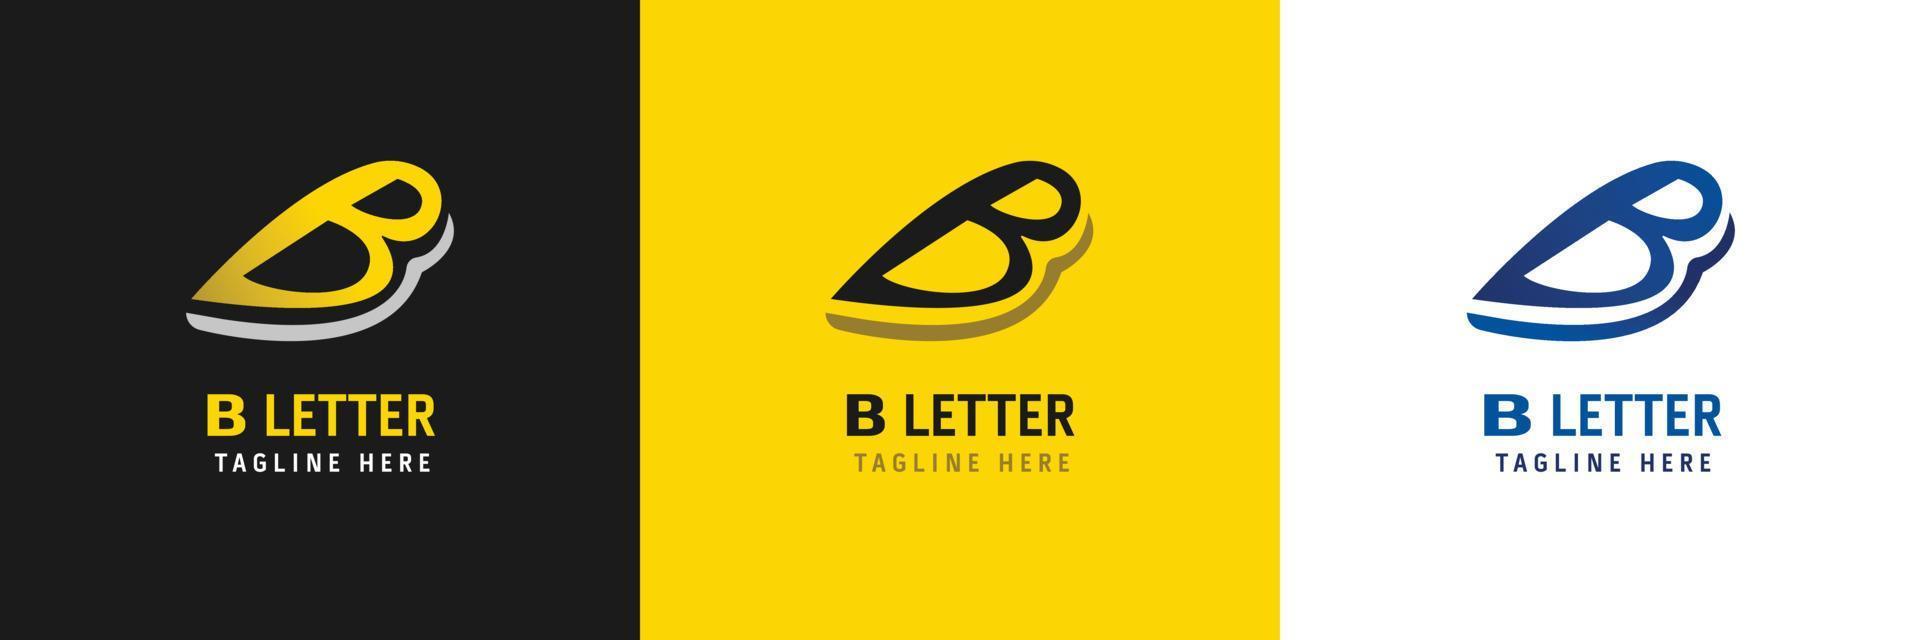 b lettera logo design vettore